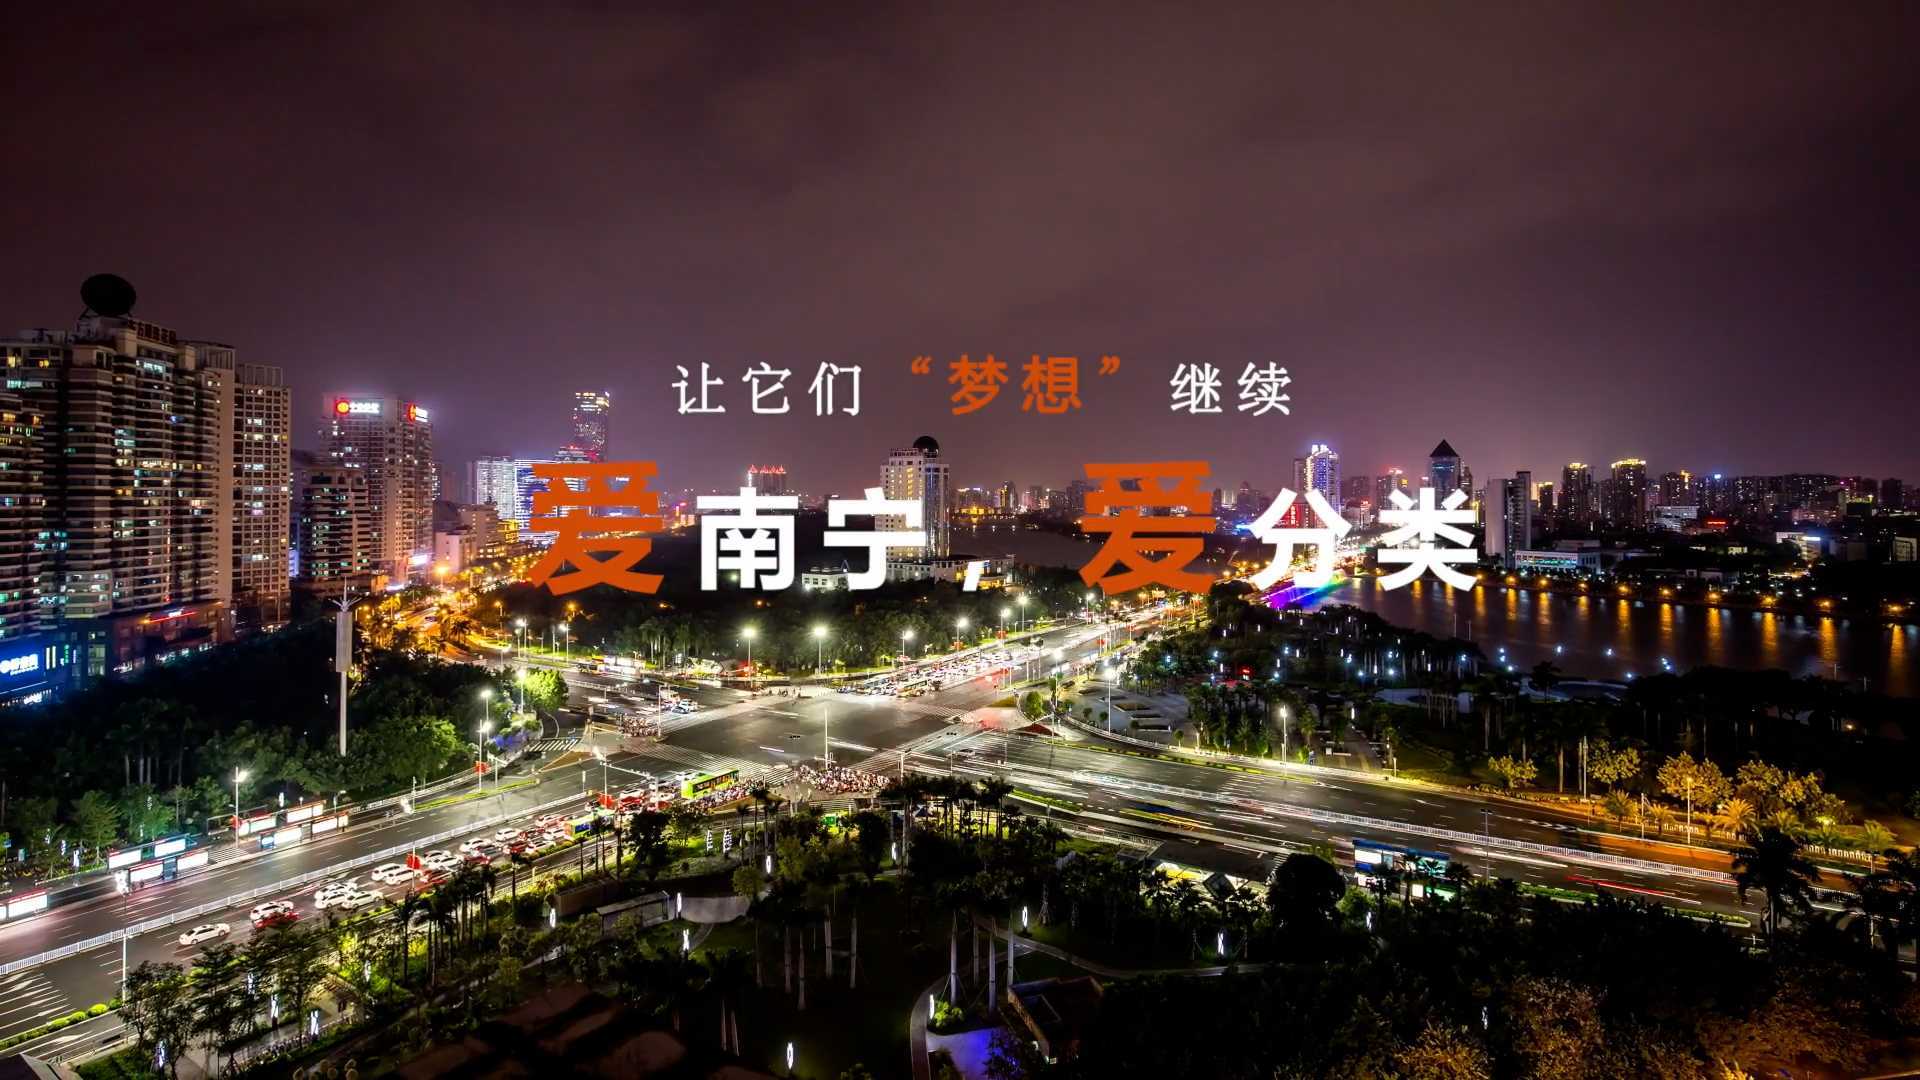 企业宣传-南宁建宁水务集团公益广告